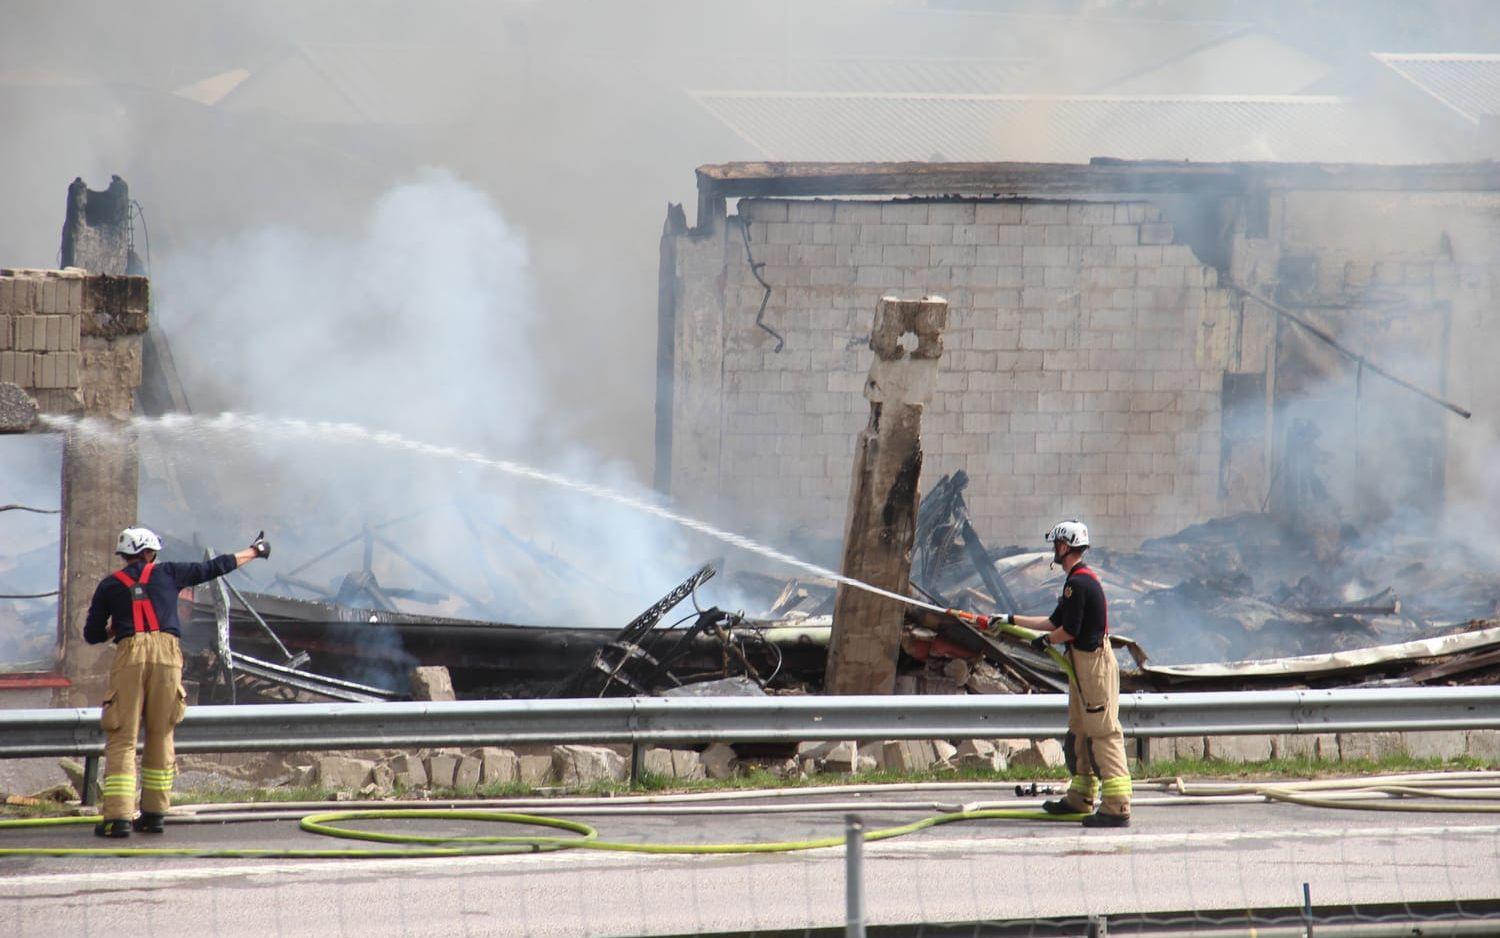 En brand bröt ut i Kållered under måndagsmorgonen. 18 enheter från räddningstjänsten är på plats.